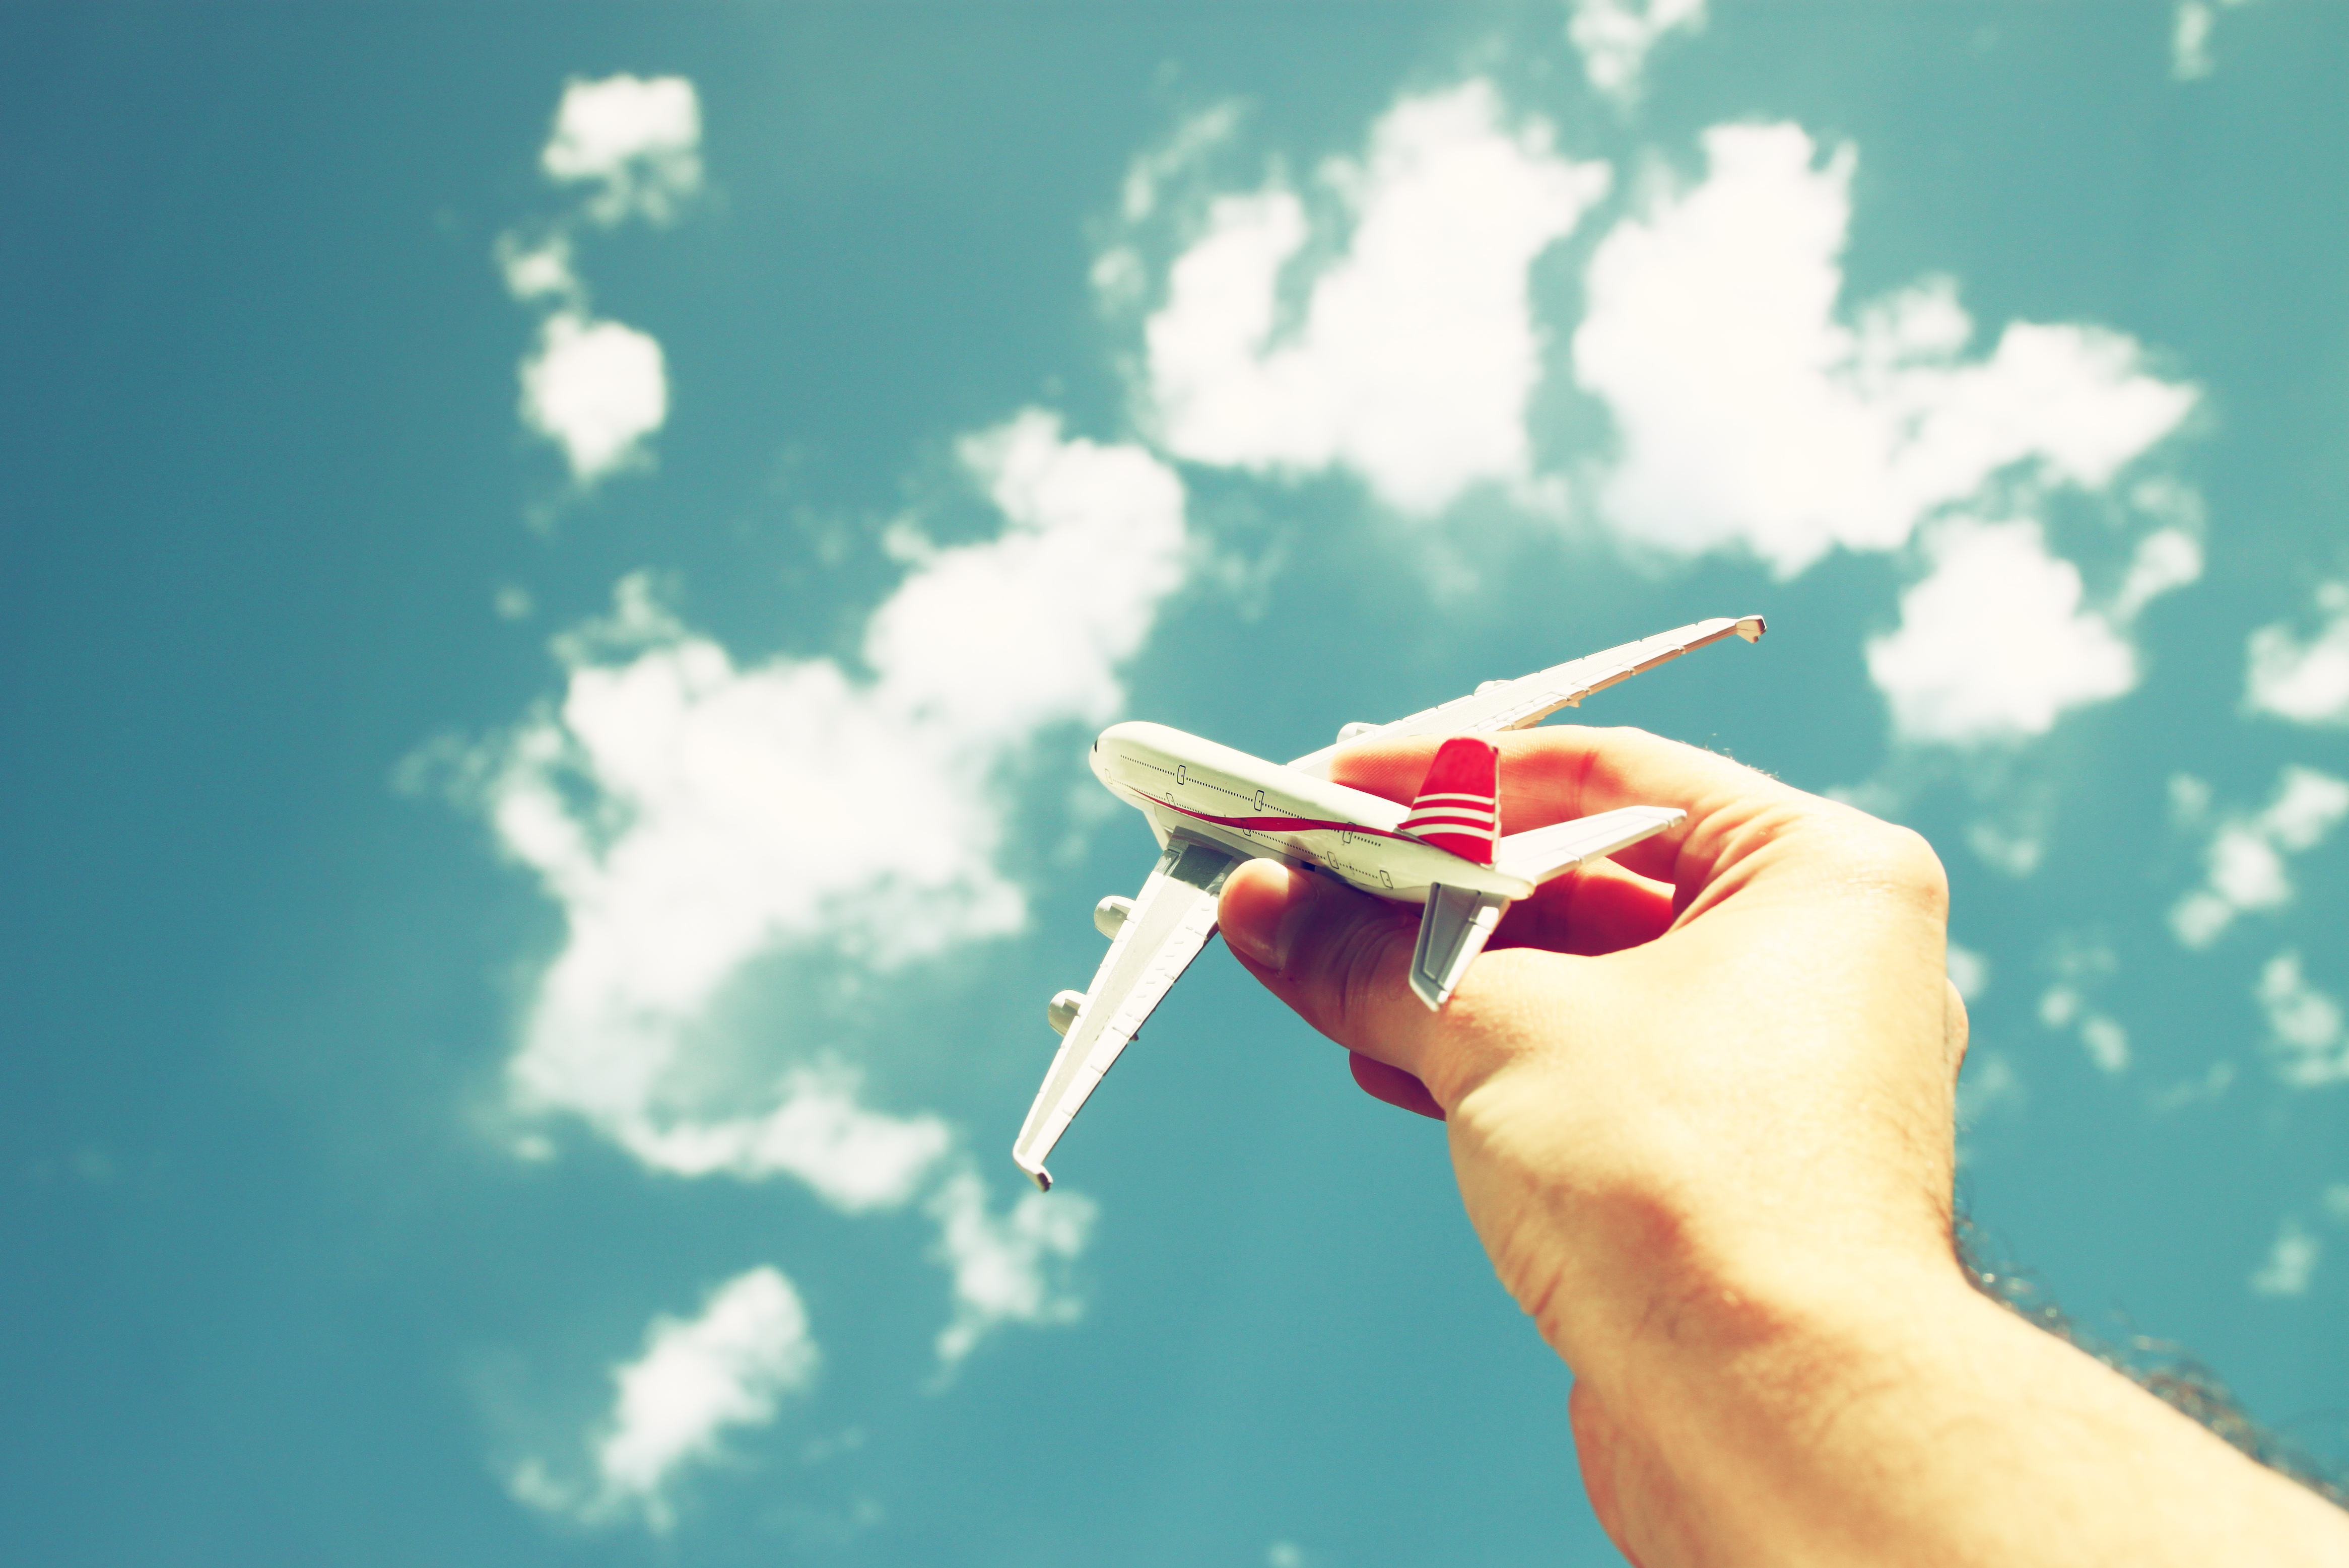 Fly traveler. Самолет на руке. Рука и самолет в небе. Запускает самолетик. Запуск бумажных самолетиков.